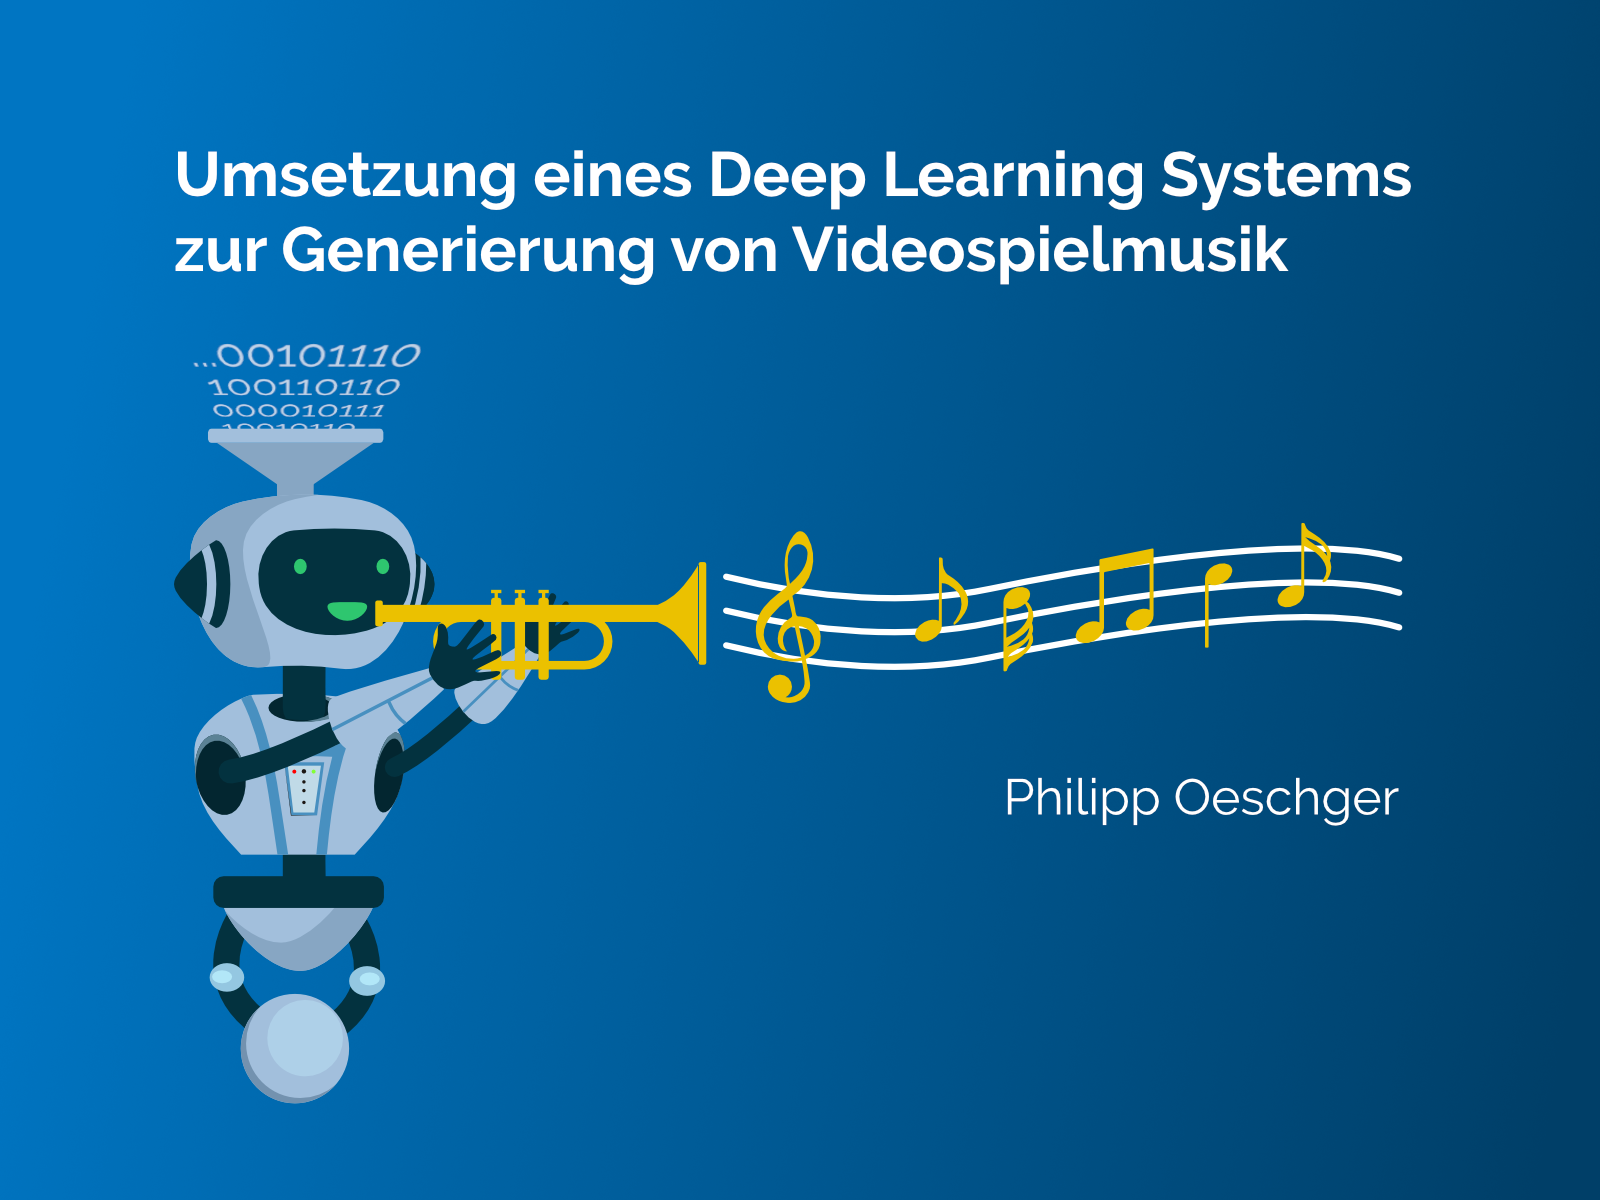 Umsetzung eines Deep Learning Systems zur Generierung von Videospielmusik